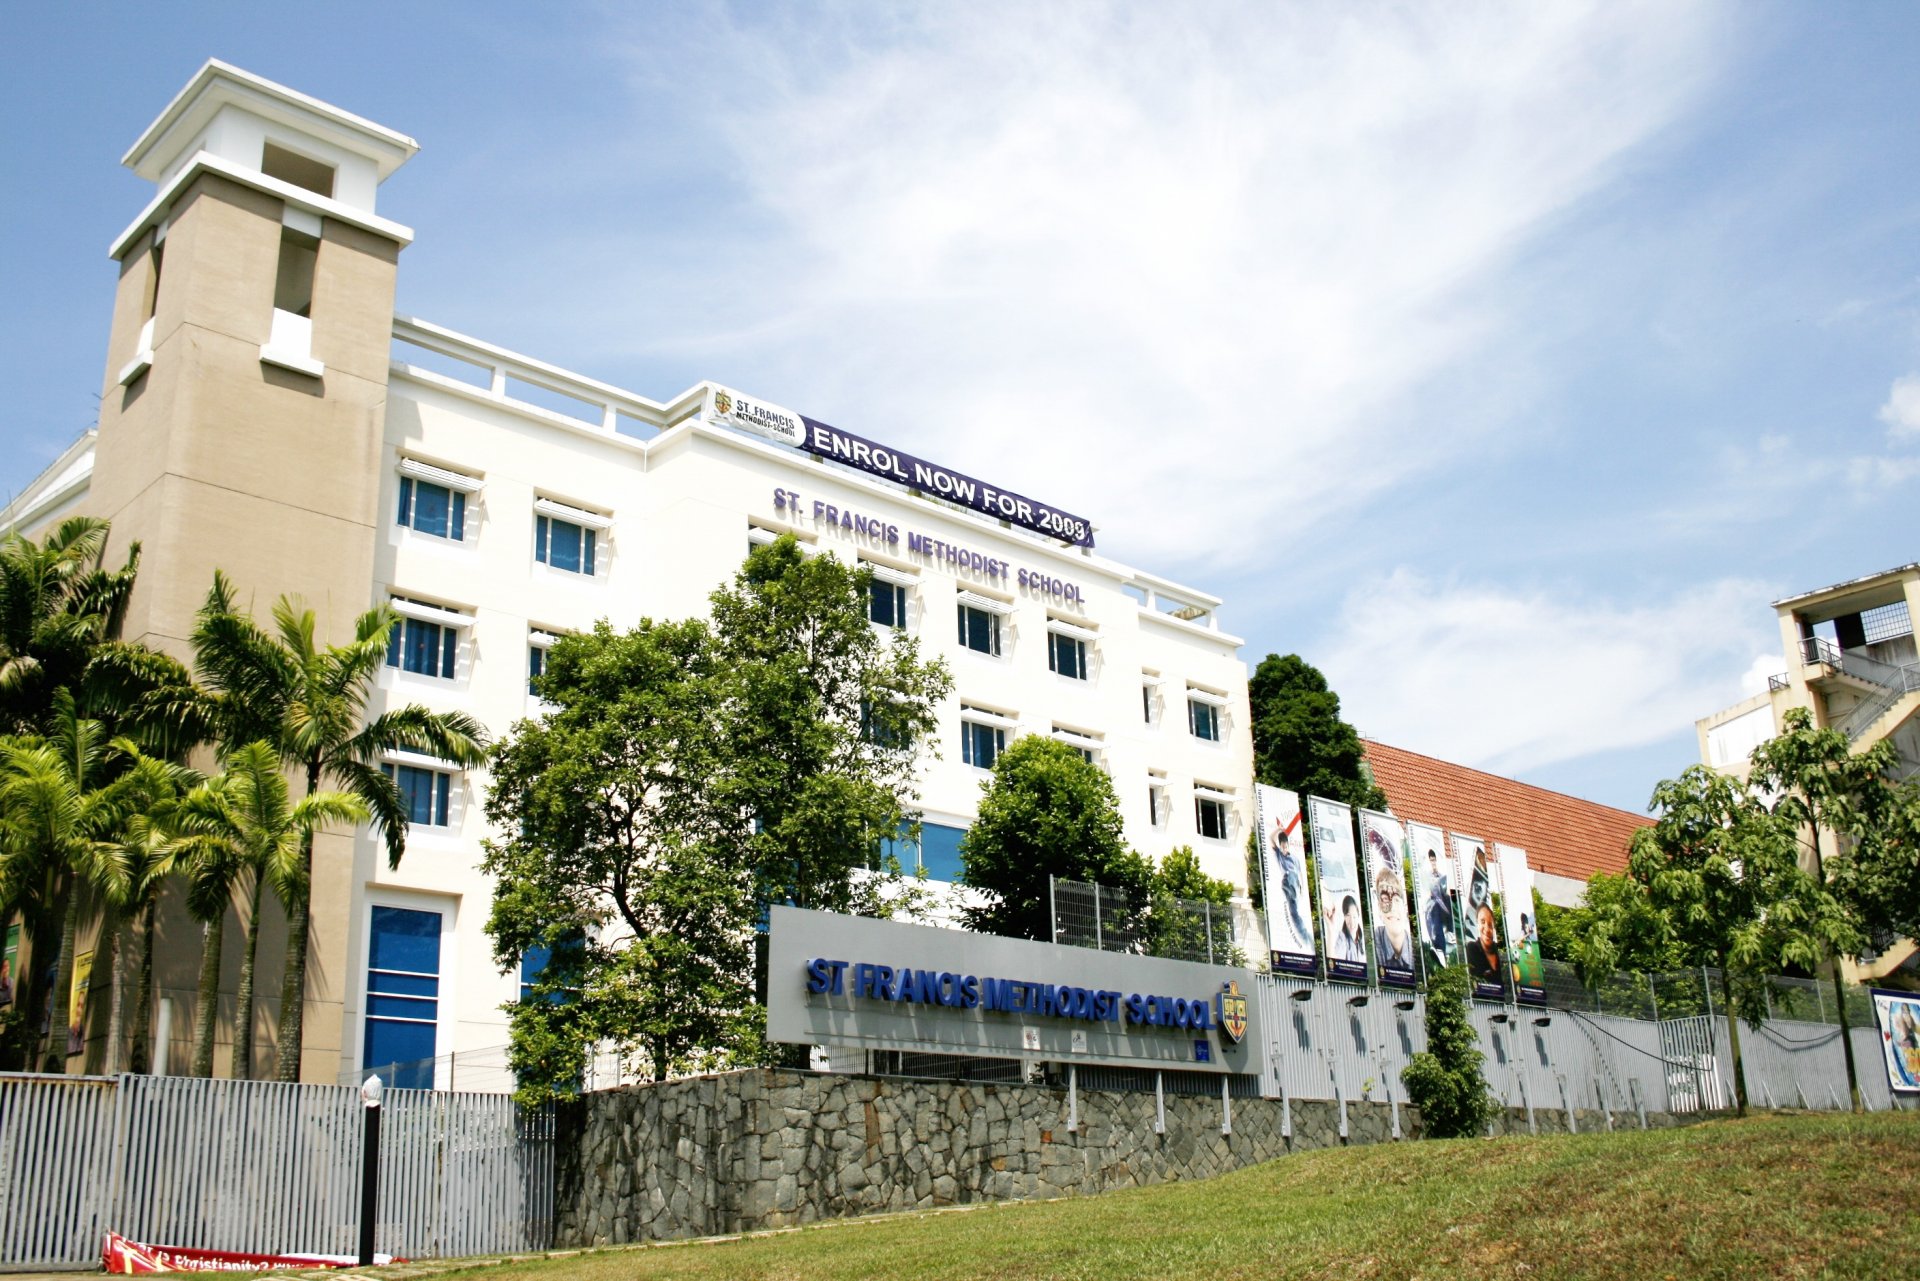 โรงเรียนมัธยม เซนต์ฟรานซิส เมโธดิสท์  St Francis Methodist Singapore School ที่สิงคโปร์  